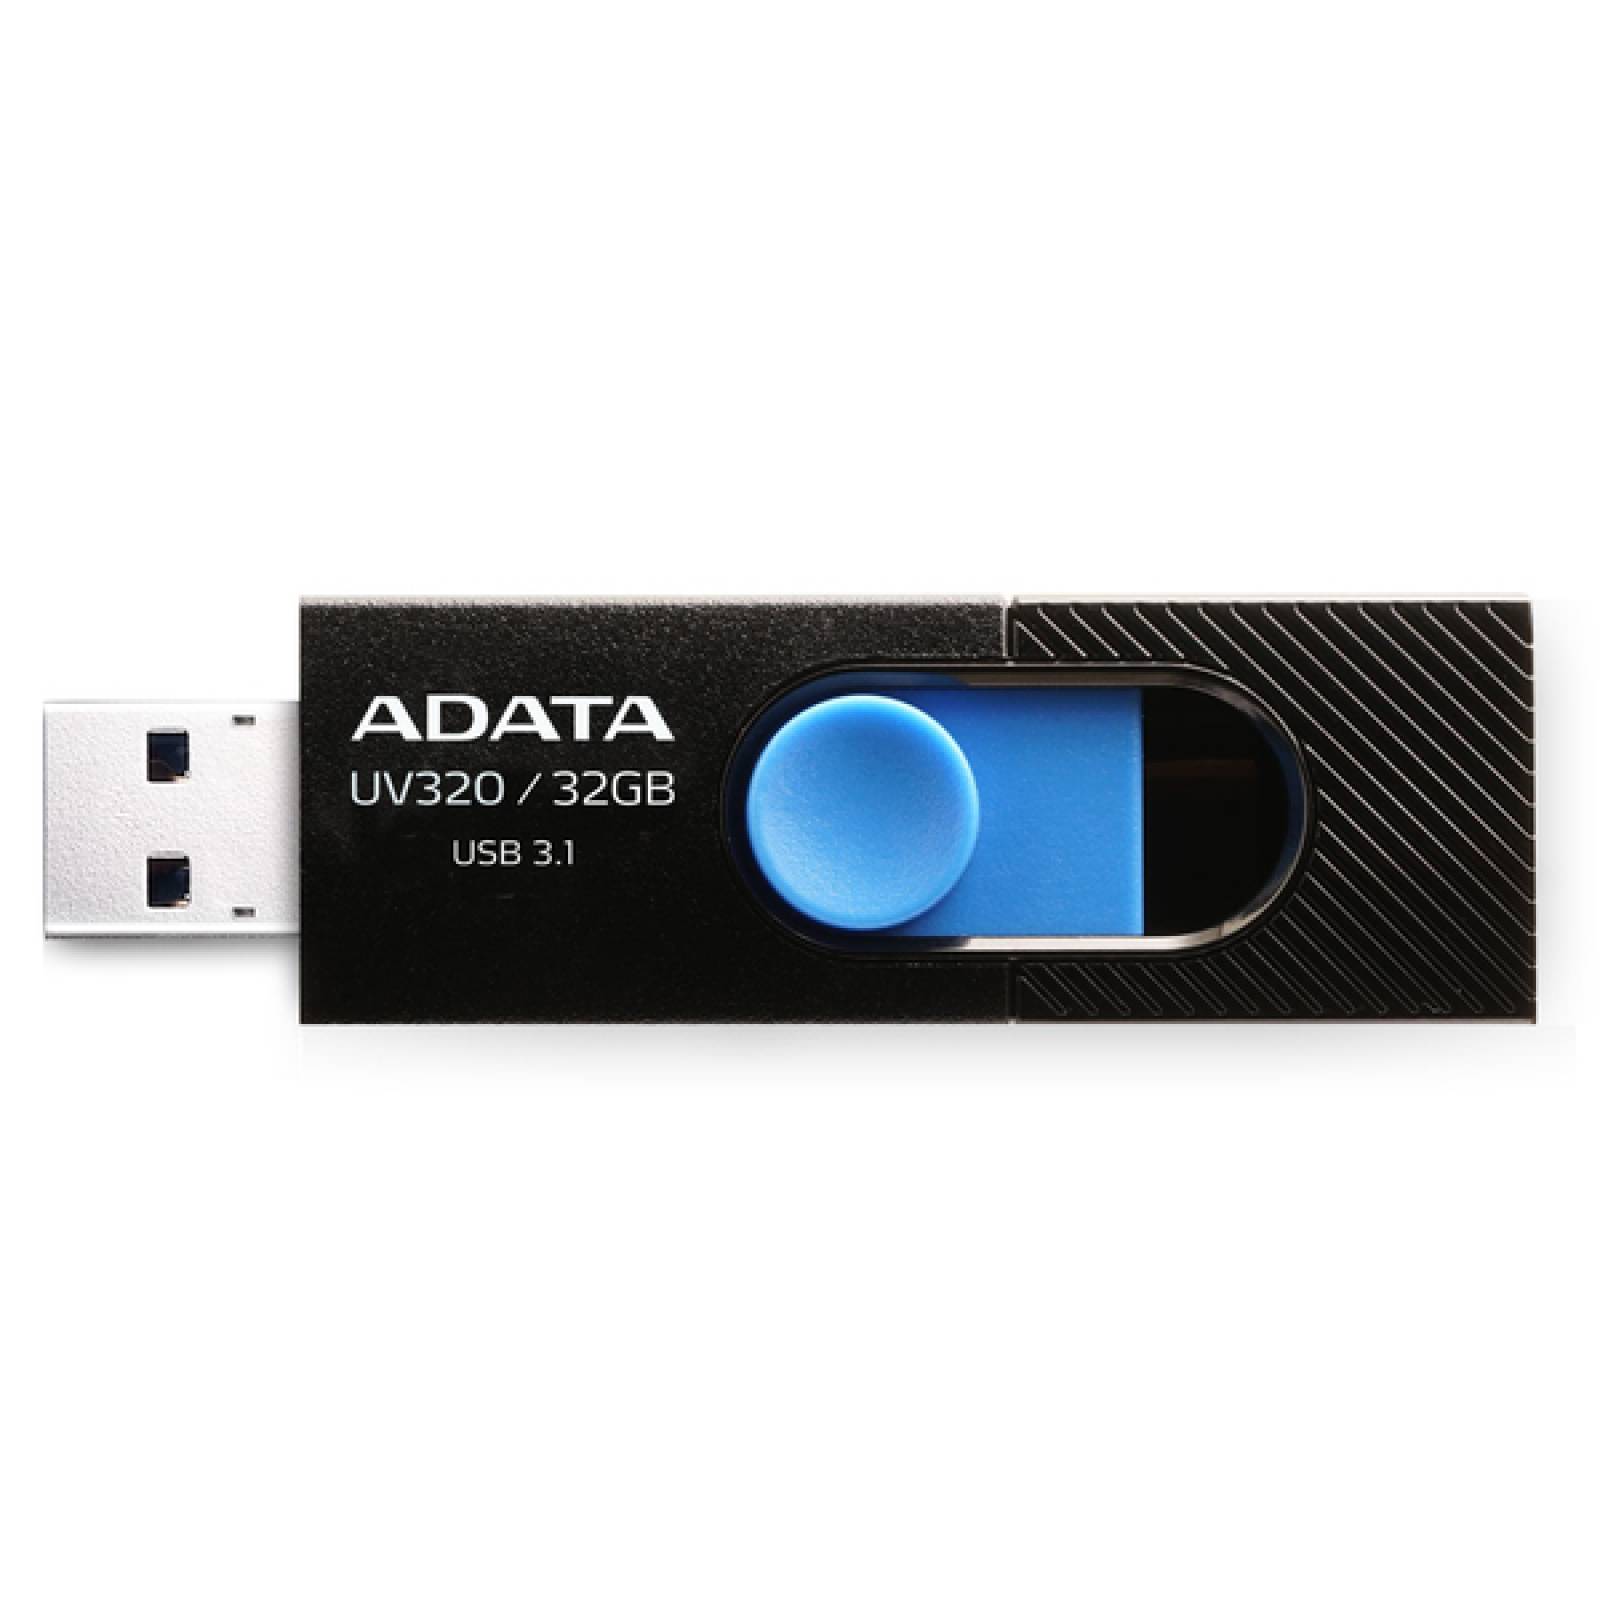 Memoria USB Adata UV320 32 GB Negro/Azul Interfaz 3.1